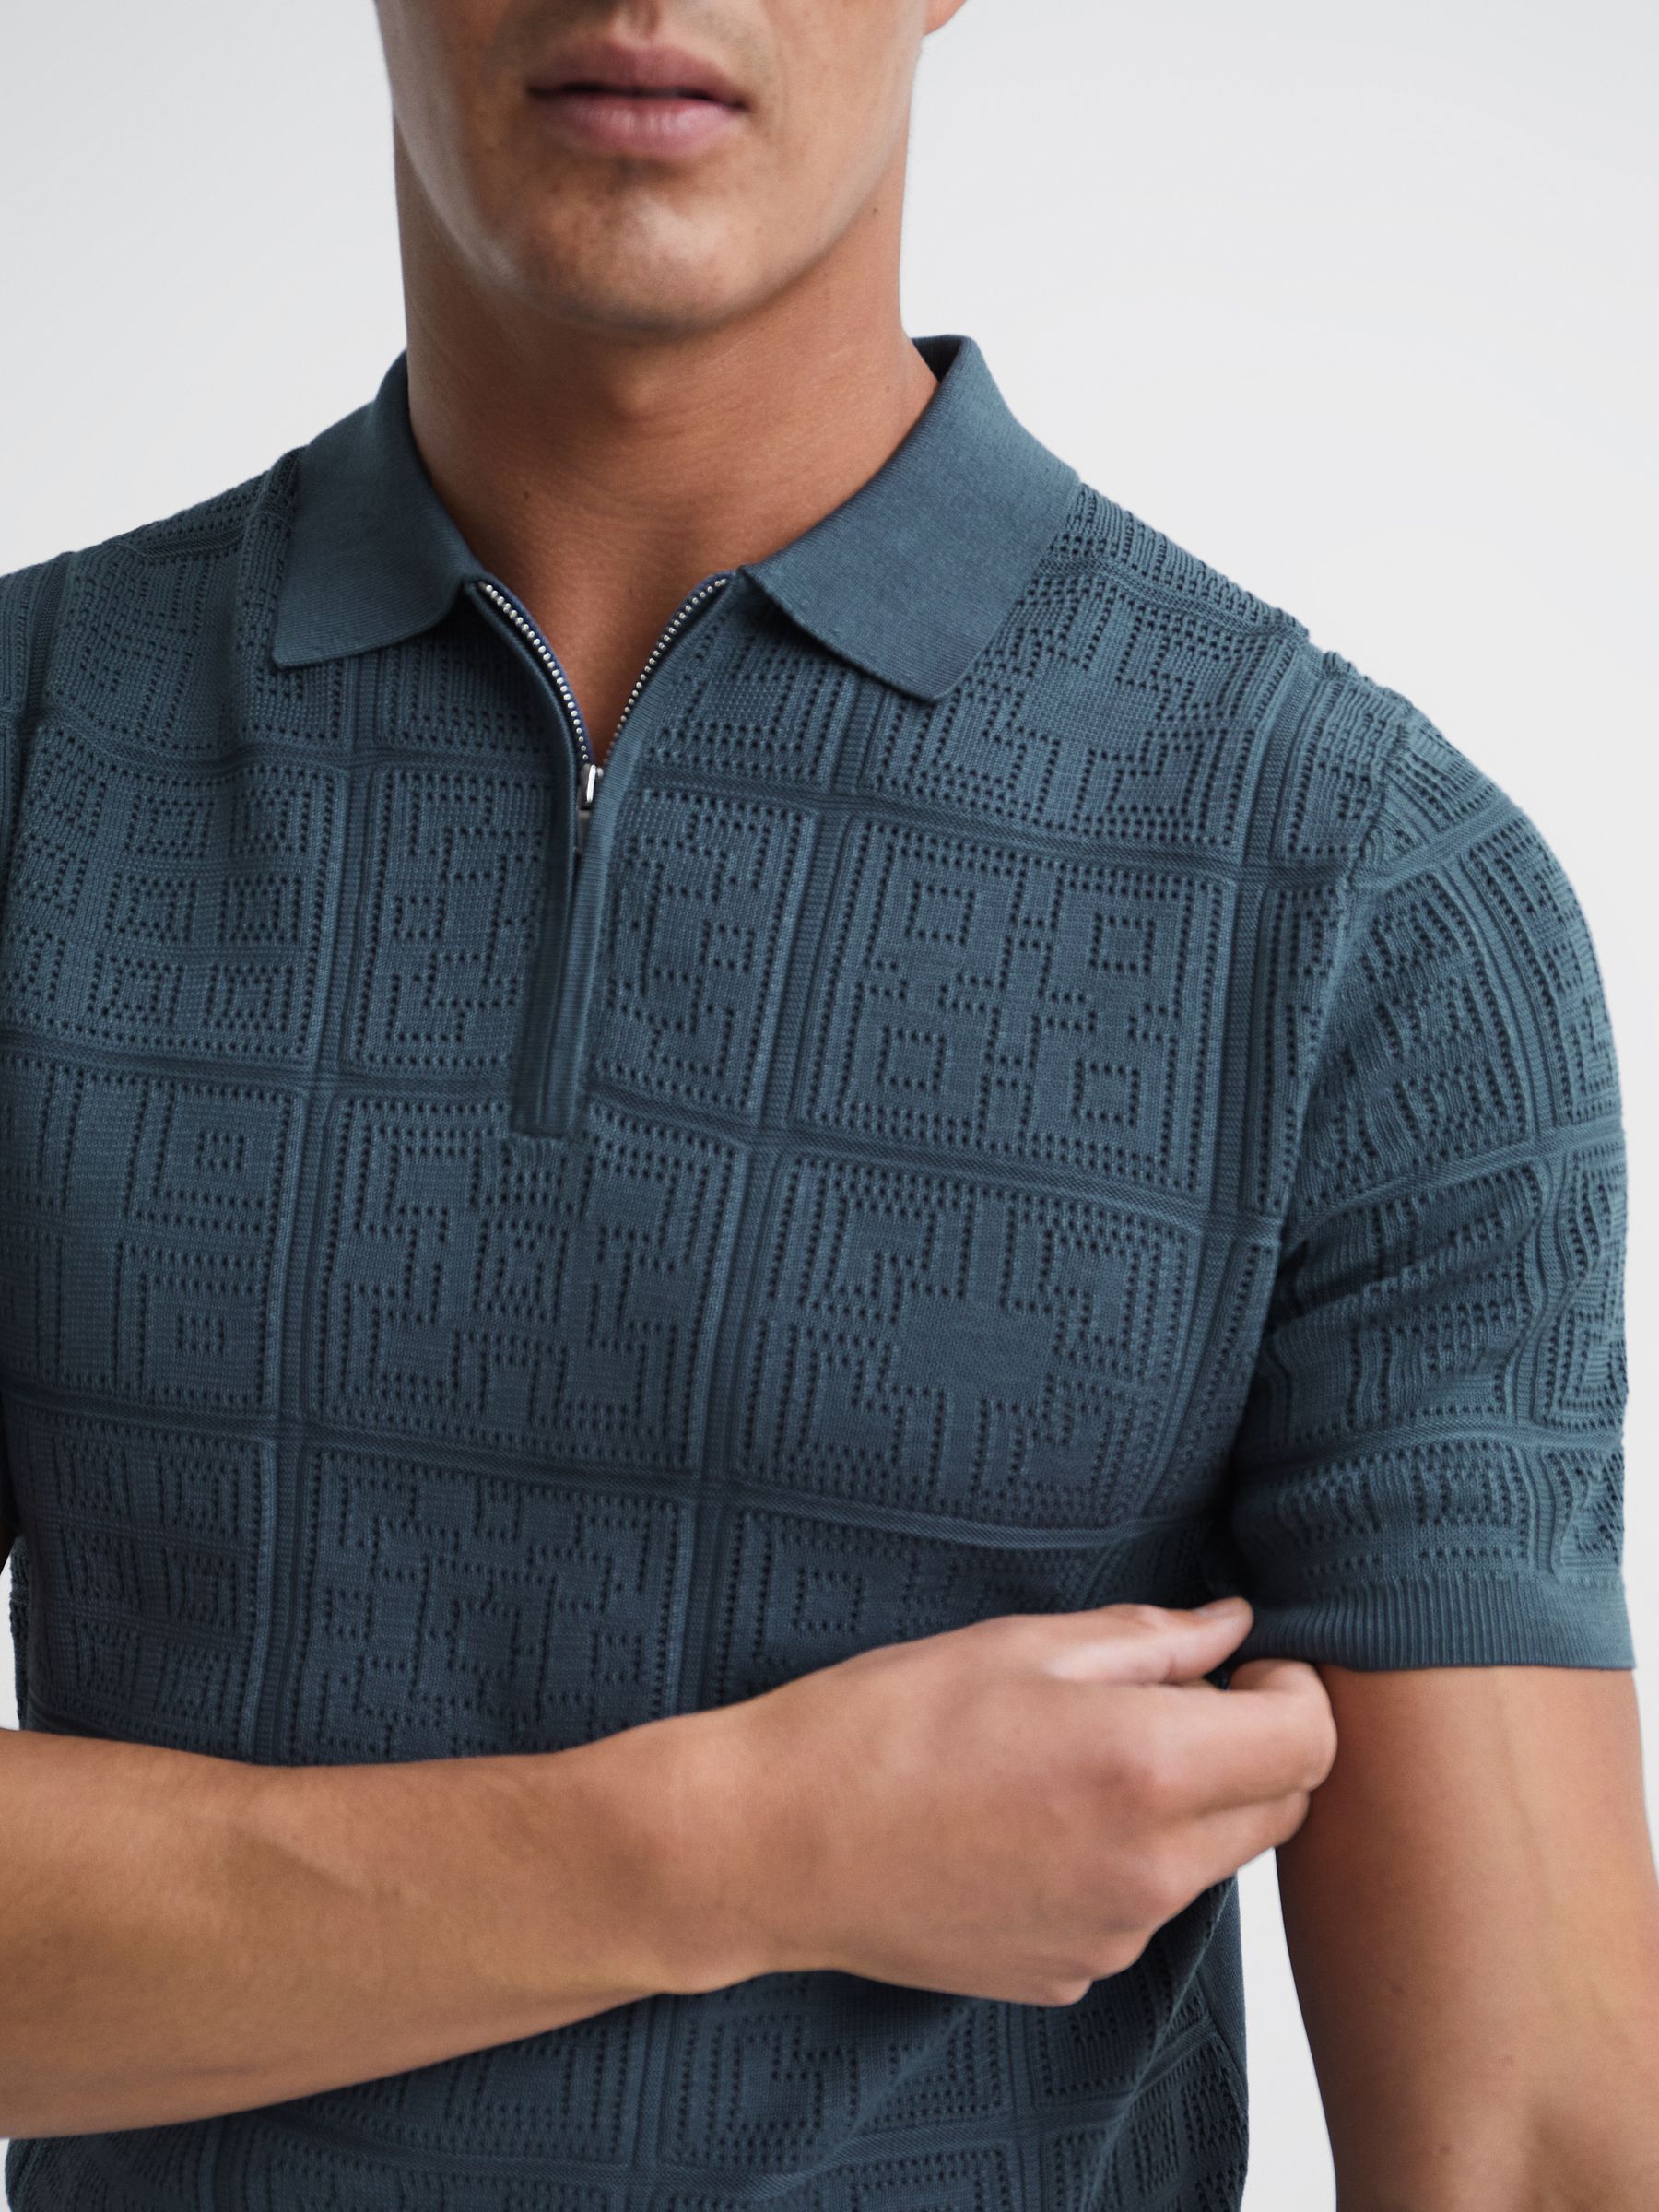 Reiss Mosaic Half Zip Textured Polo Shirt - REISS